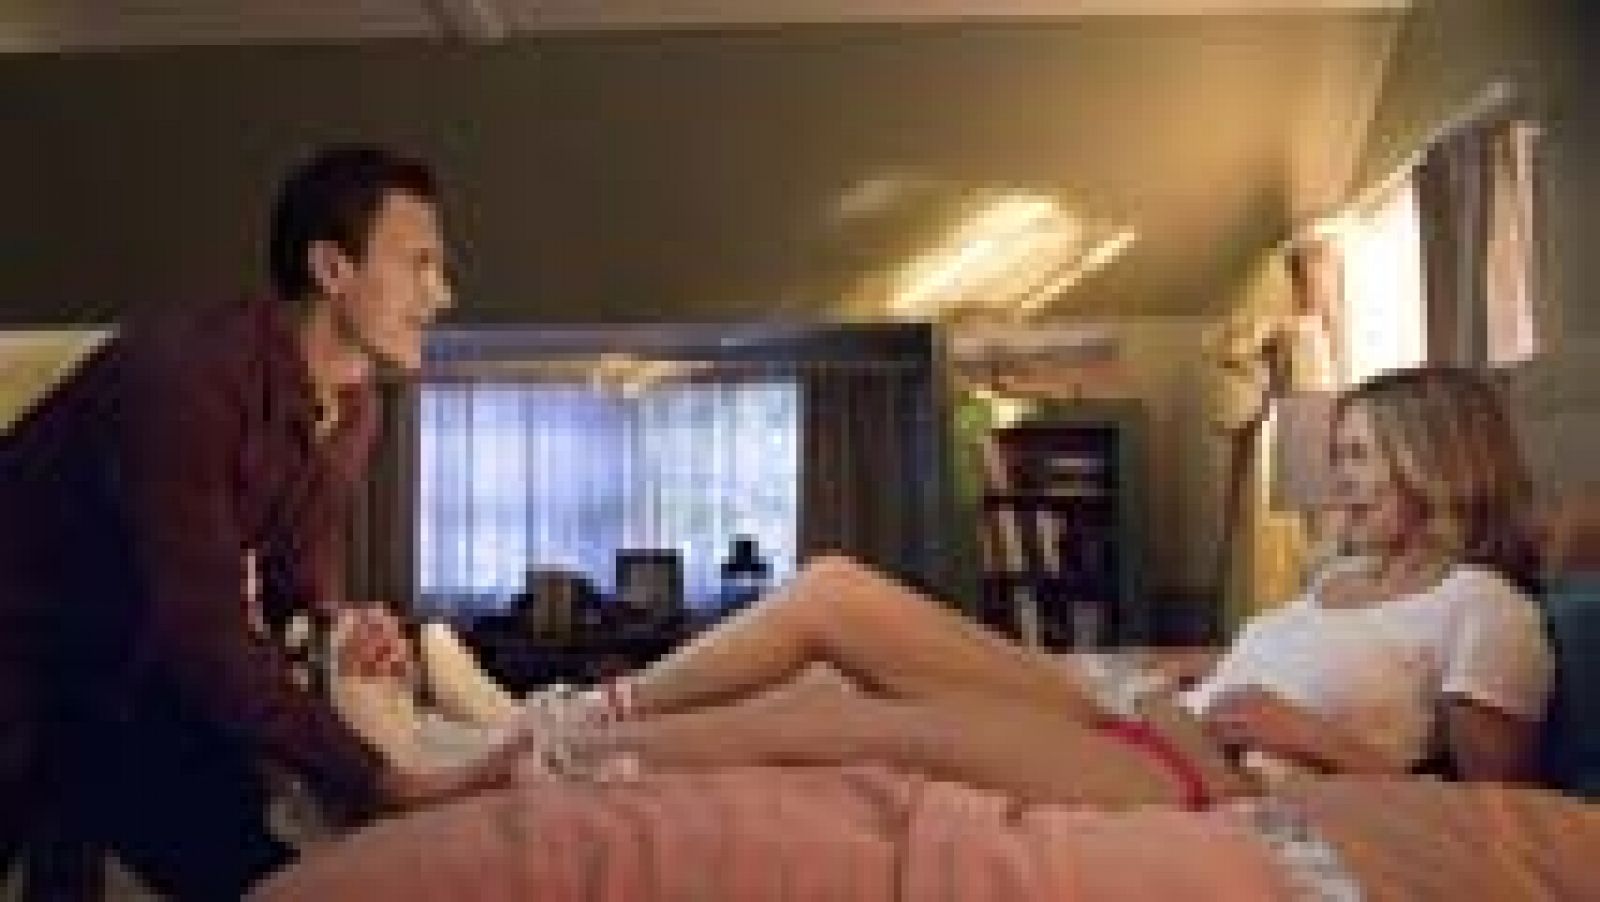 Yy Sex Video - Cameron Diaz, de madre abnegada a actriz porno en 'Sex Tape'